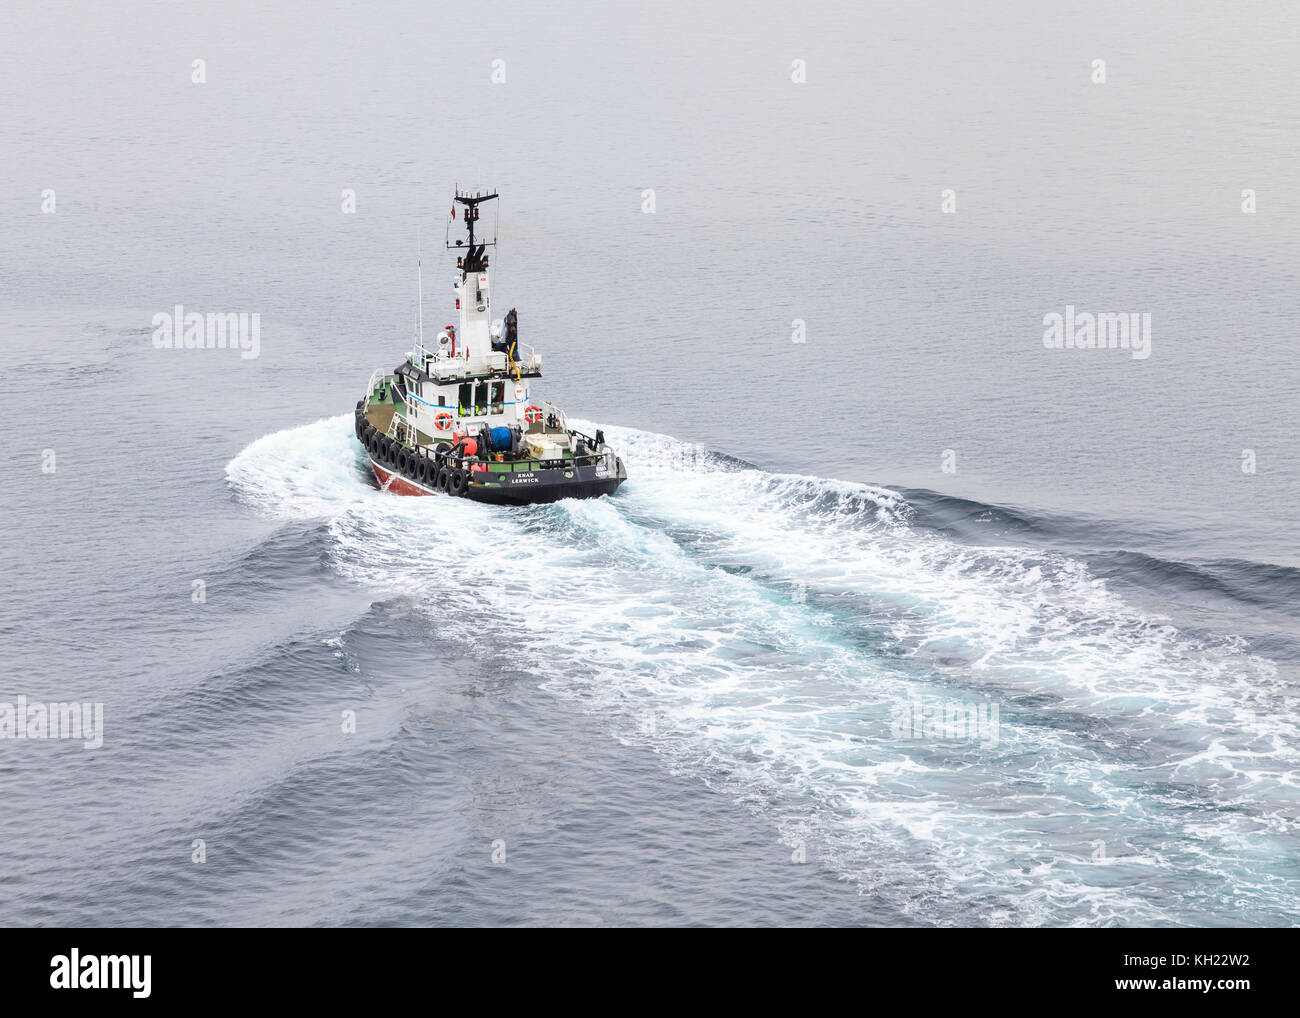 Le bateau-pilote de Lerwick, Knab, au large des îles Shetland, en Écosse. Banque D'Images